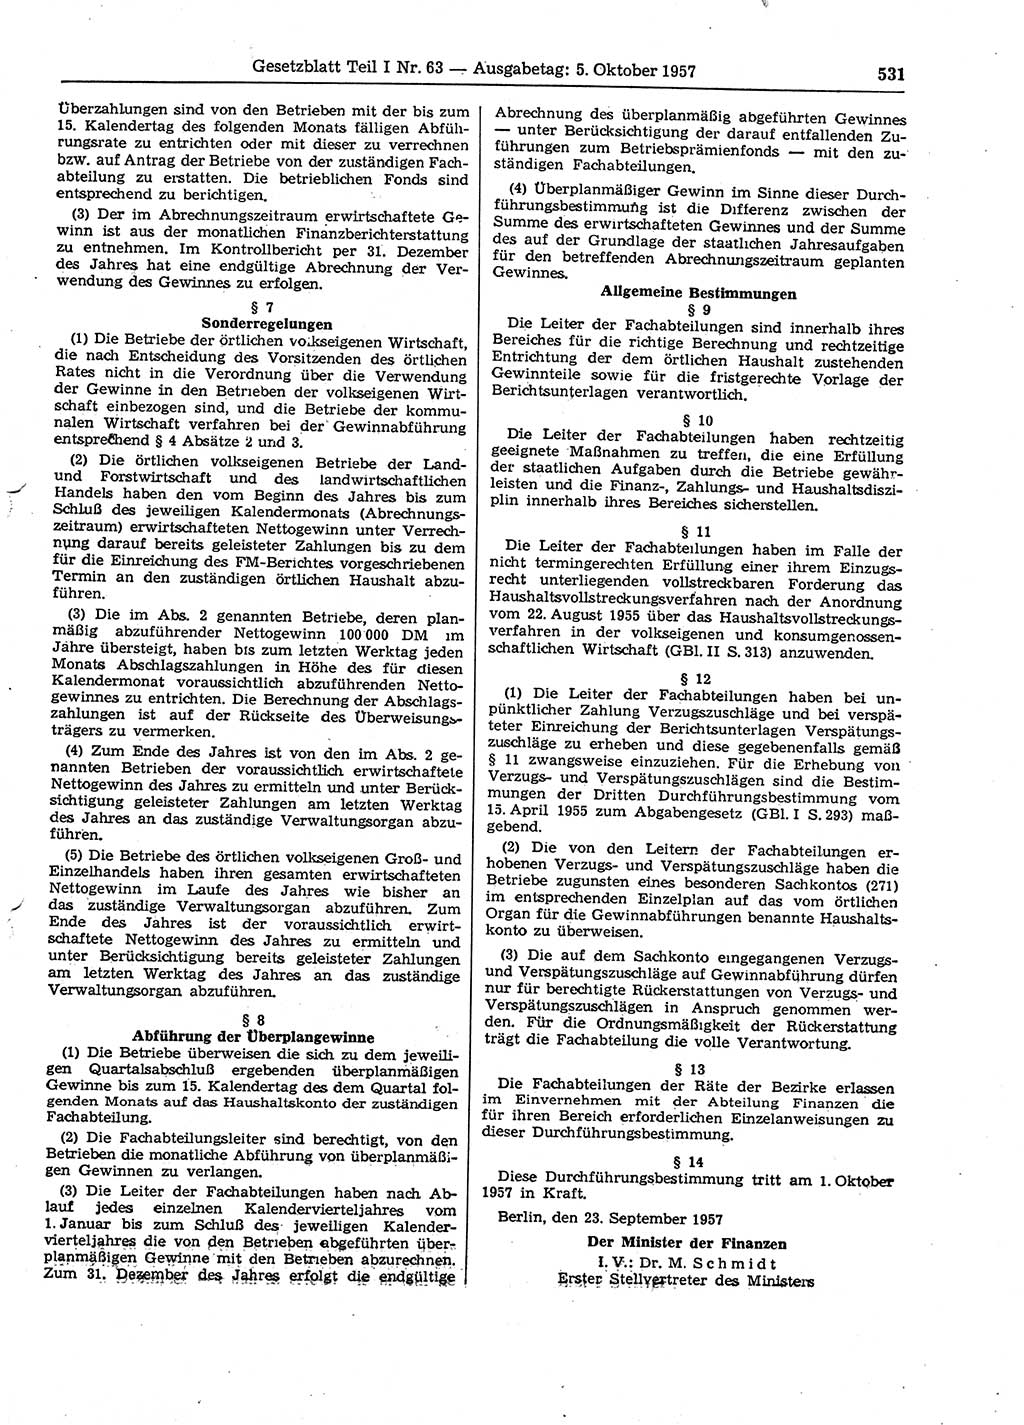 Gesetzblatt (GBl.) der Deutschen Demokratischen Republik (DDR) Teil Ⅰ 1957, Seite 531 (GBl. DDR Ⅰ 1957, S. 531)